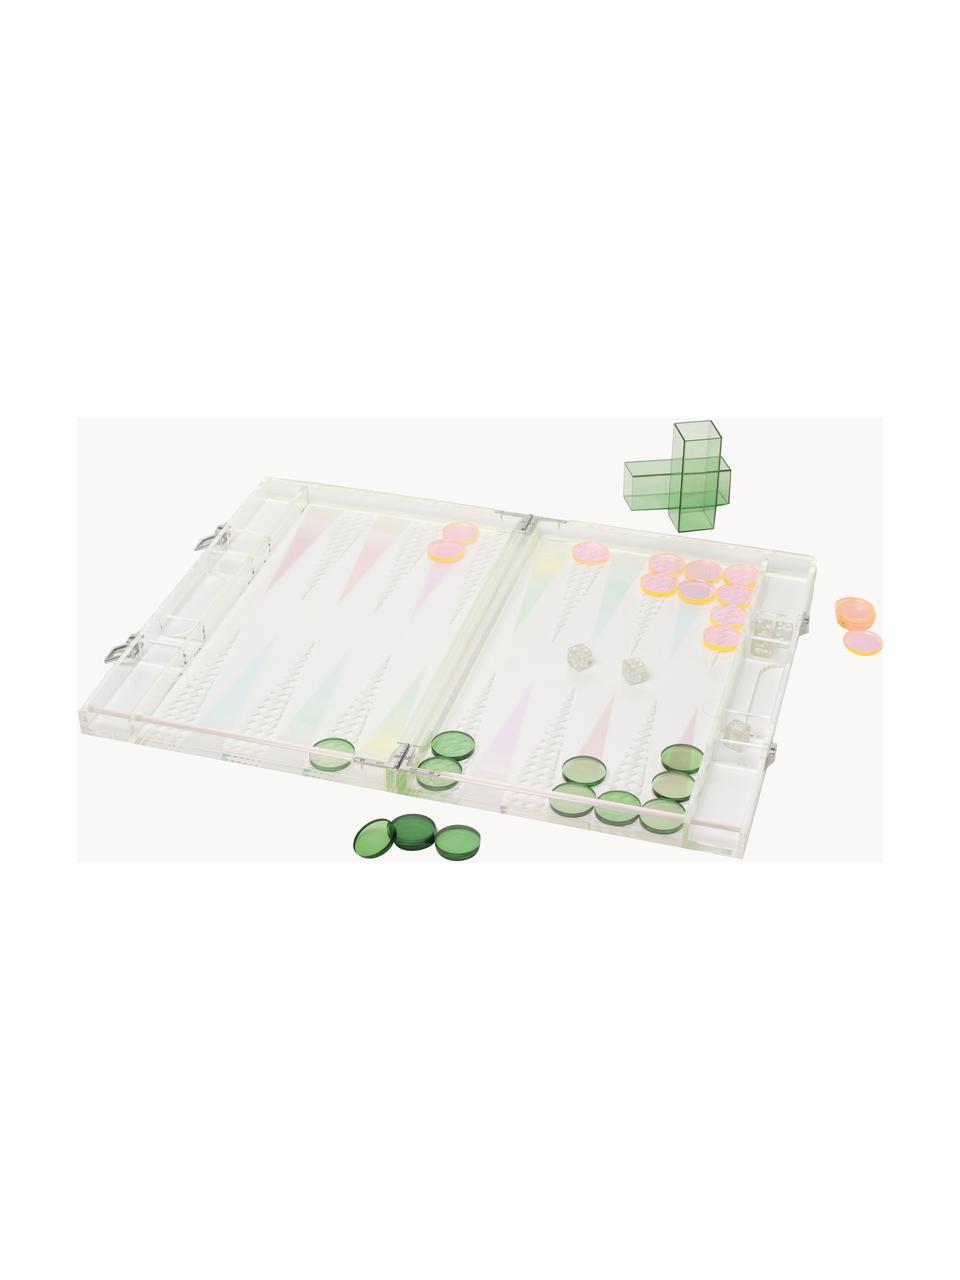 Gra backgammon Sherbert, Tworzywo sztuczne, Transparentny, jasny różowy, zielony, S 54 x W 41 cm